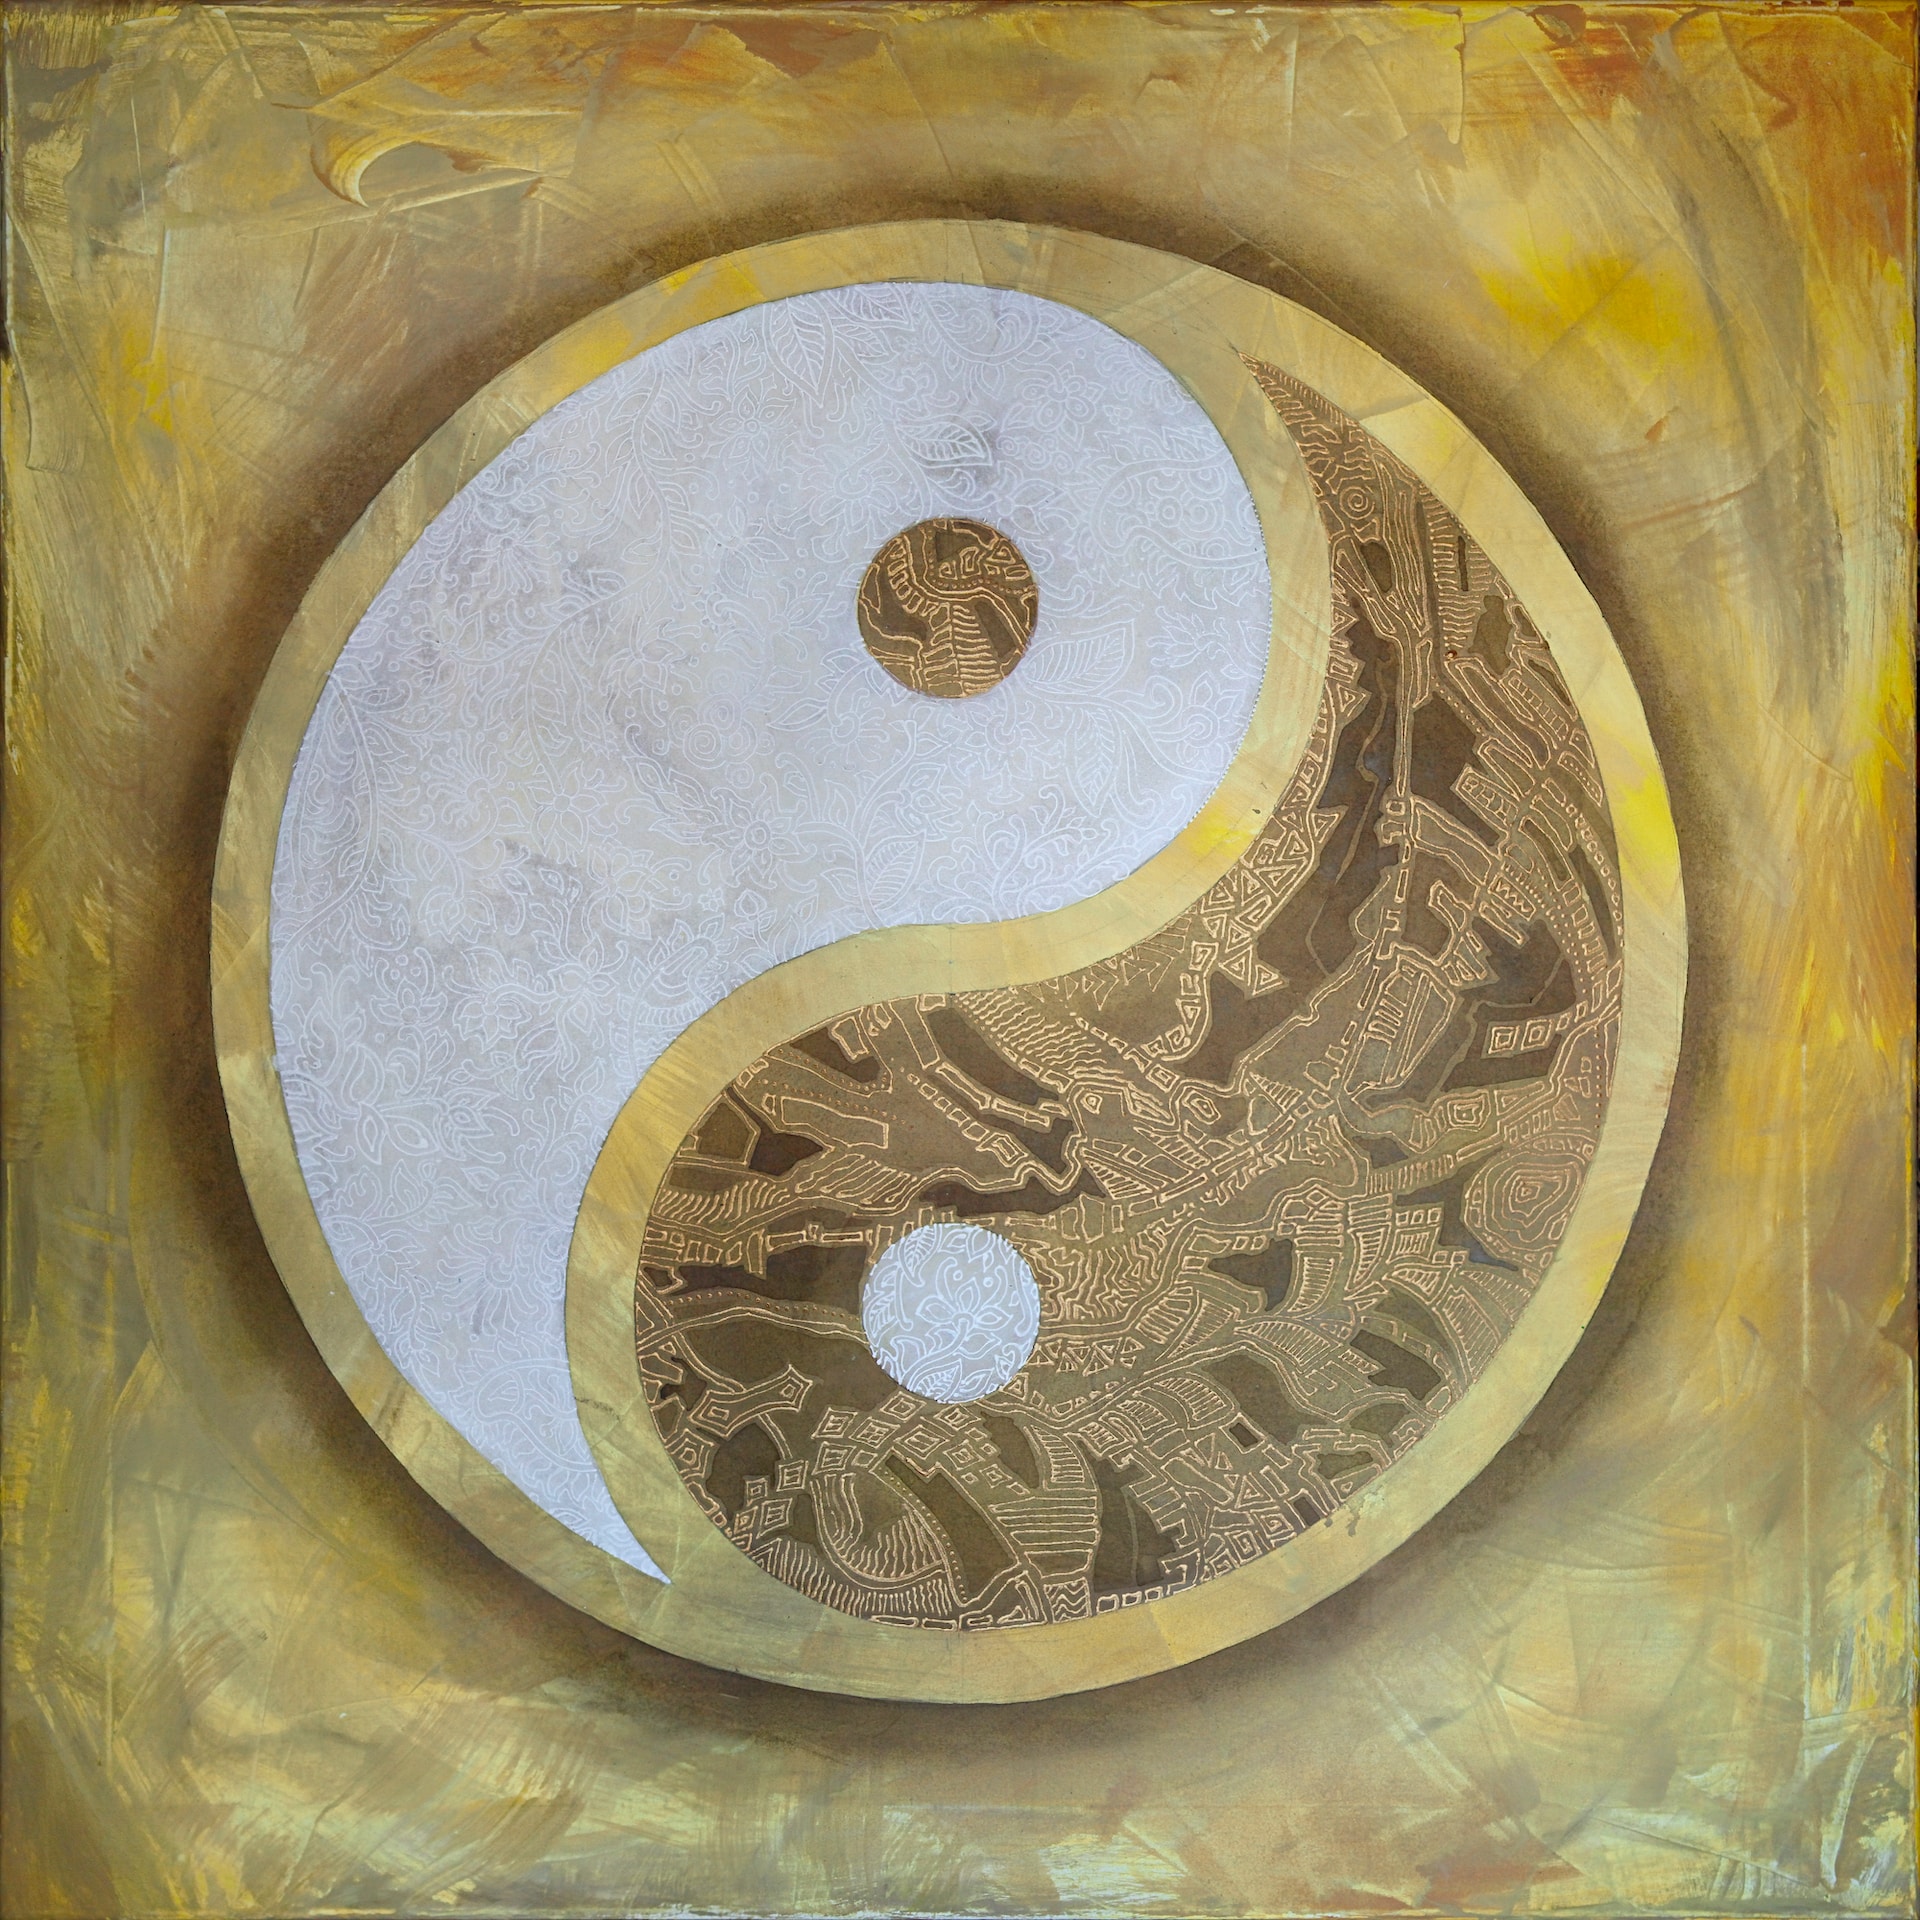 Yin Yang healing symbol.